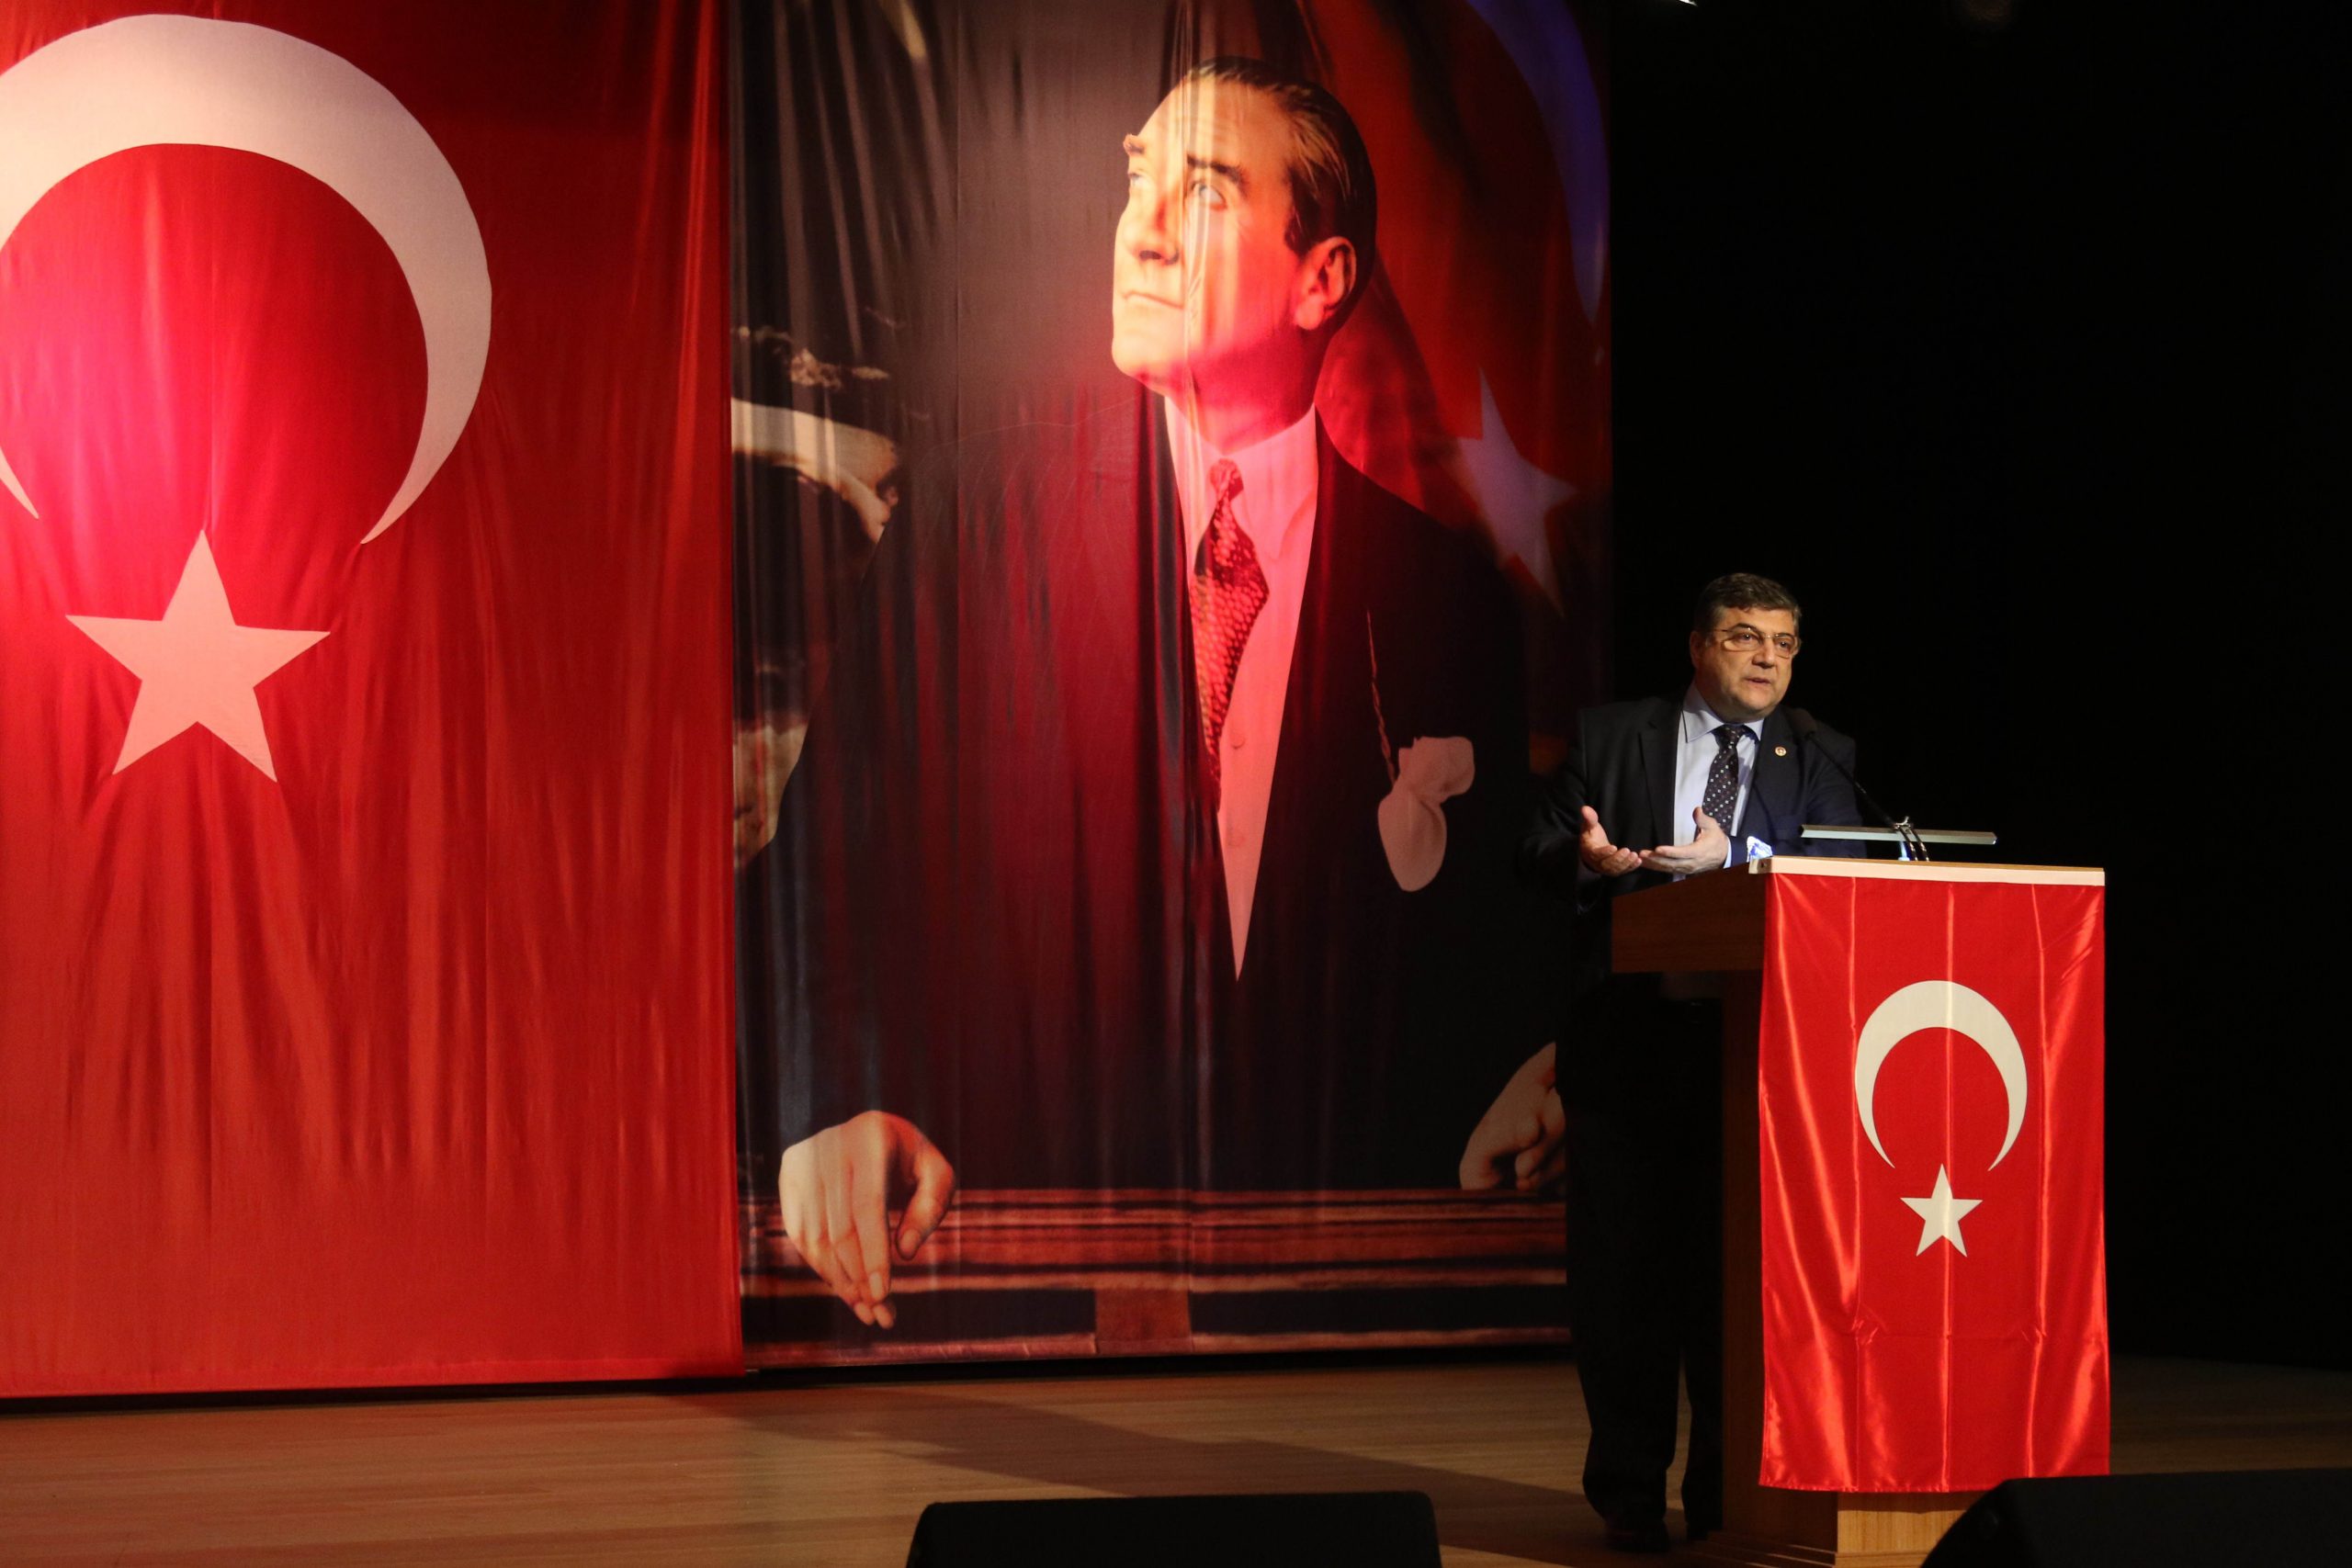 Milletvekili Sındır, “Cumhuriyet Anadolu topraklarında ilk defa millet egemenliğinin tescilidir”